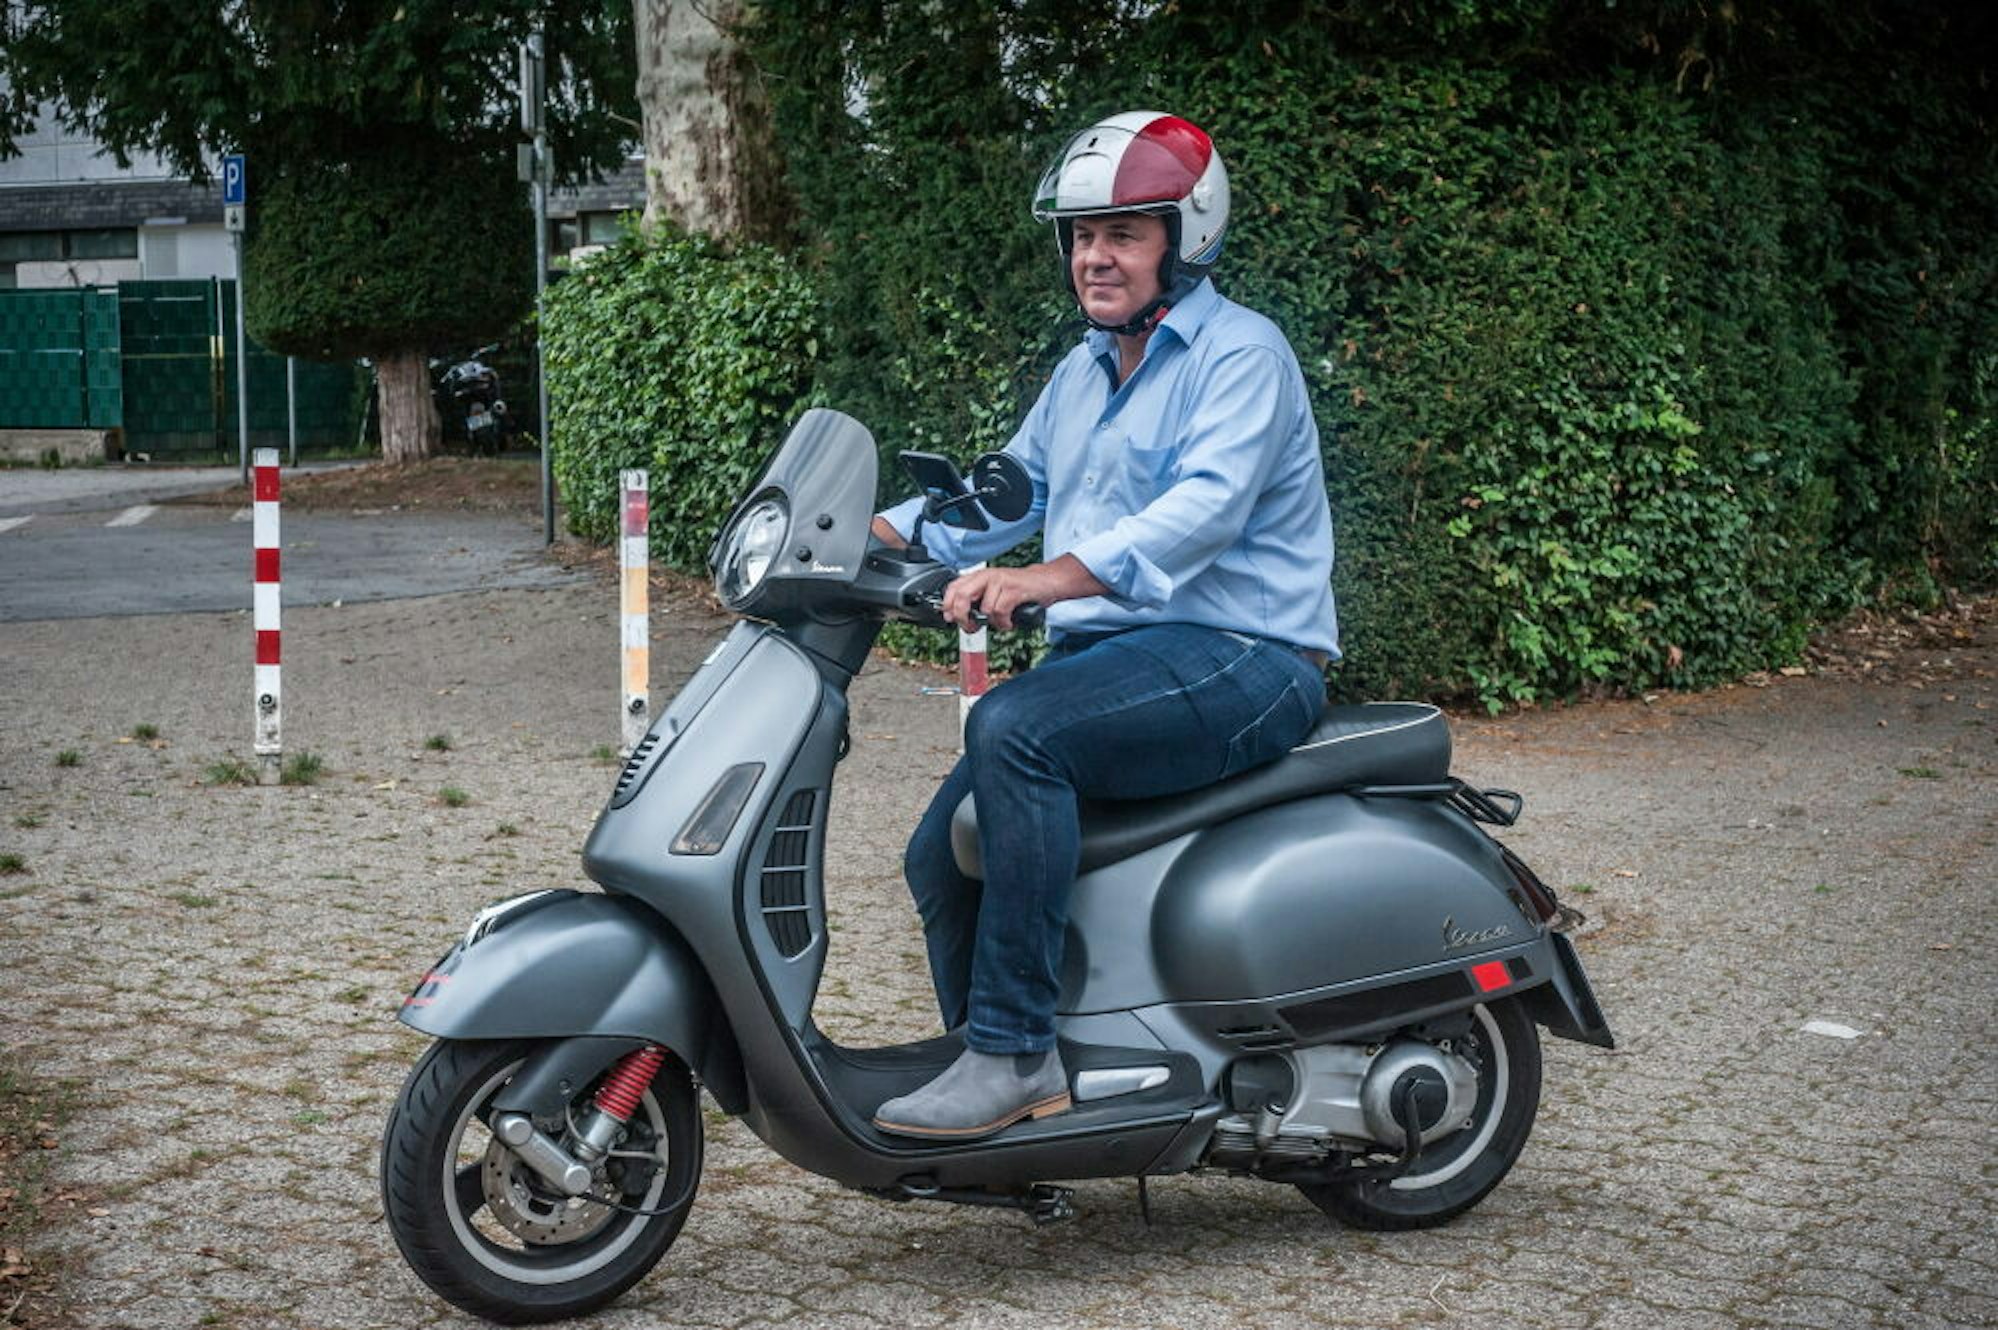 Privat und dienstlich ist der Sozialdemokrat bei trockenem Wetter am liebsten mit seinem Motorroller unterwegs.